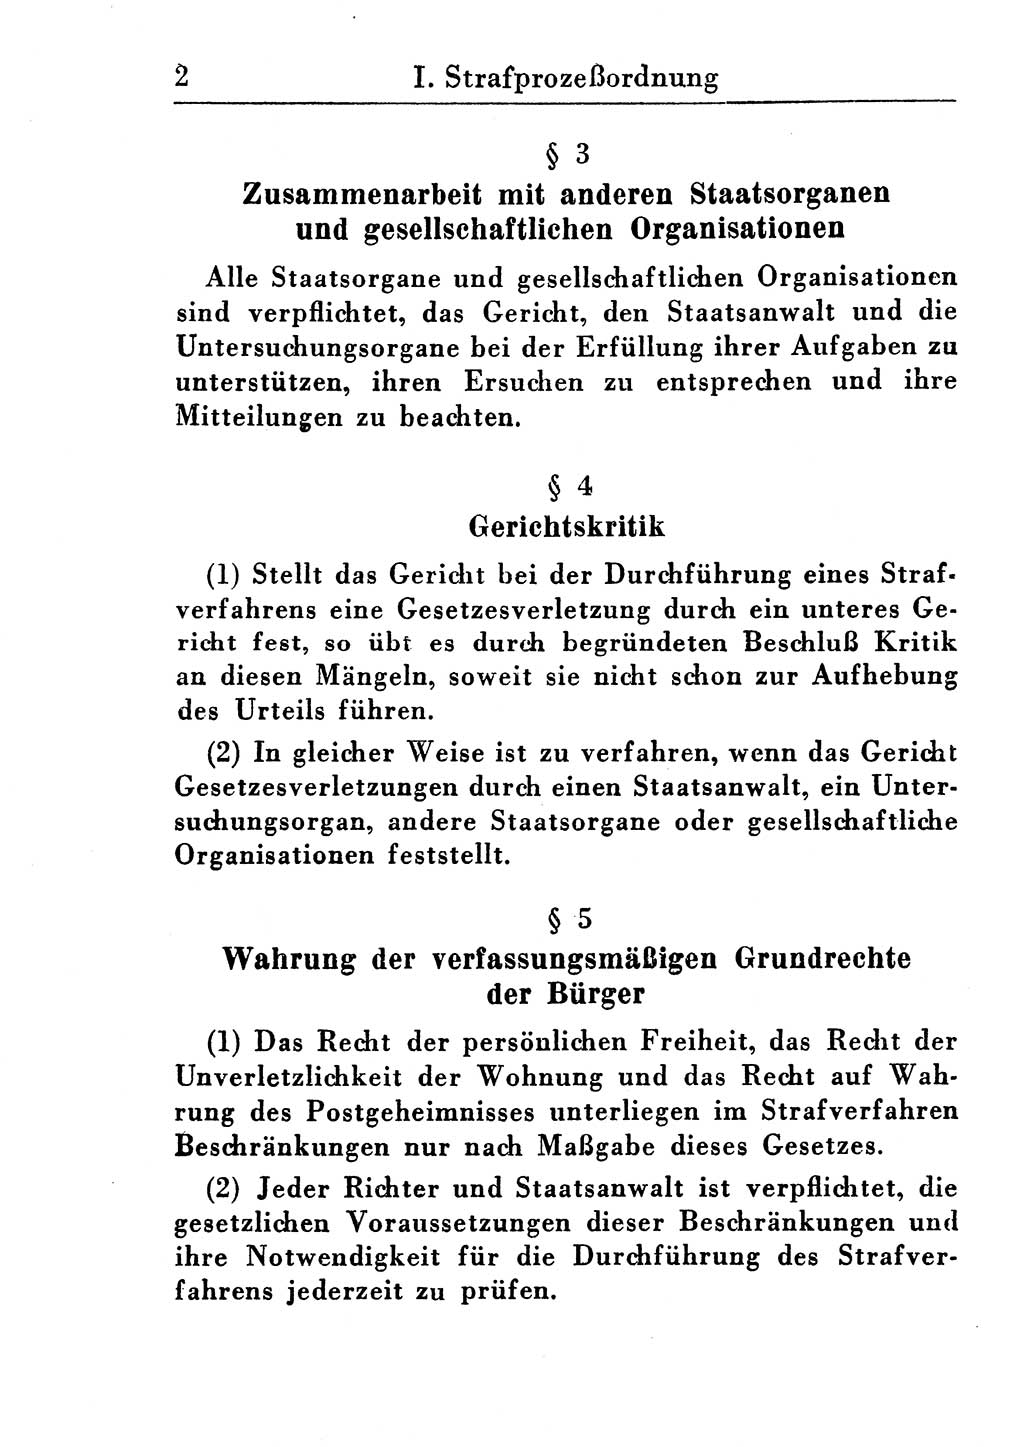 Strafprozeßordnung (StPO), Gerichtsverfassungsgesetz (GVG), Staatsanwaltsgesetz (StAG) und Jugendgerichtsgesetz (JGG) [Deutsche Demokratische Republik (DDR)] 1955, Seite 2 (StPO GVG StAG JGG DDR 1955, S. 2)